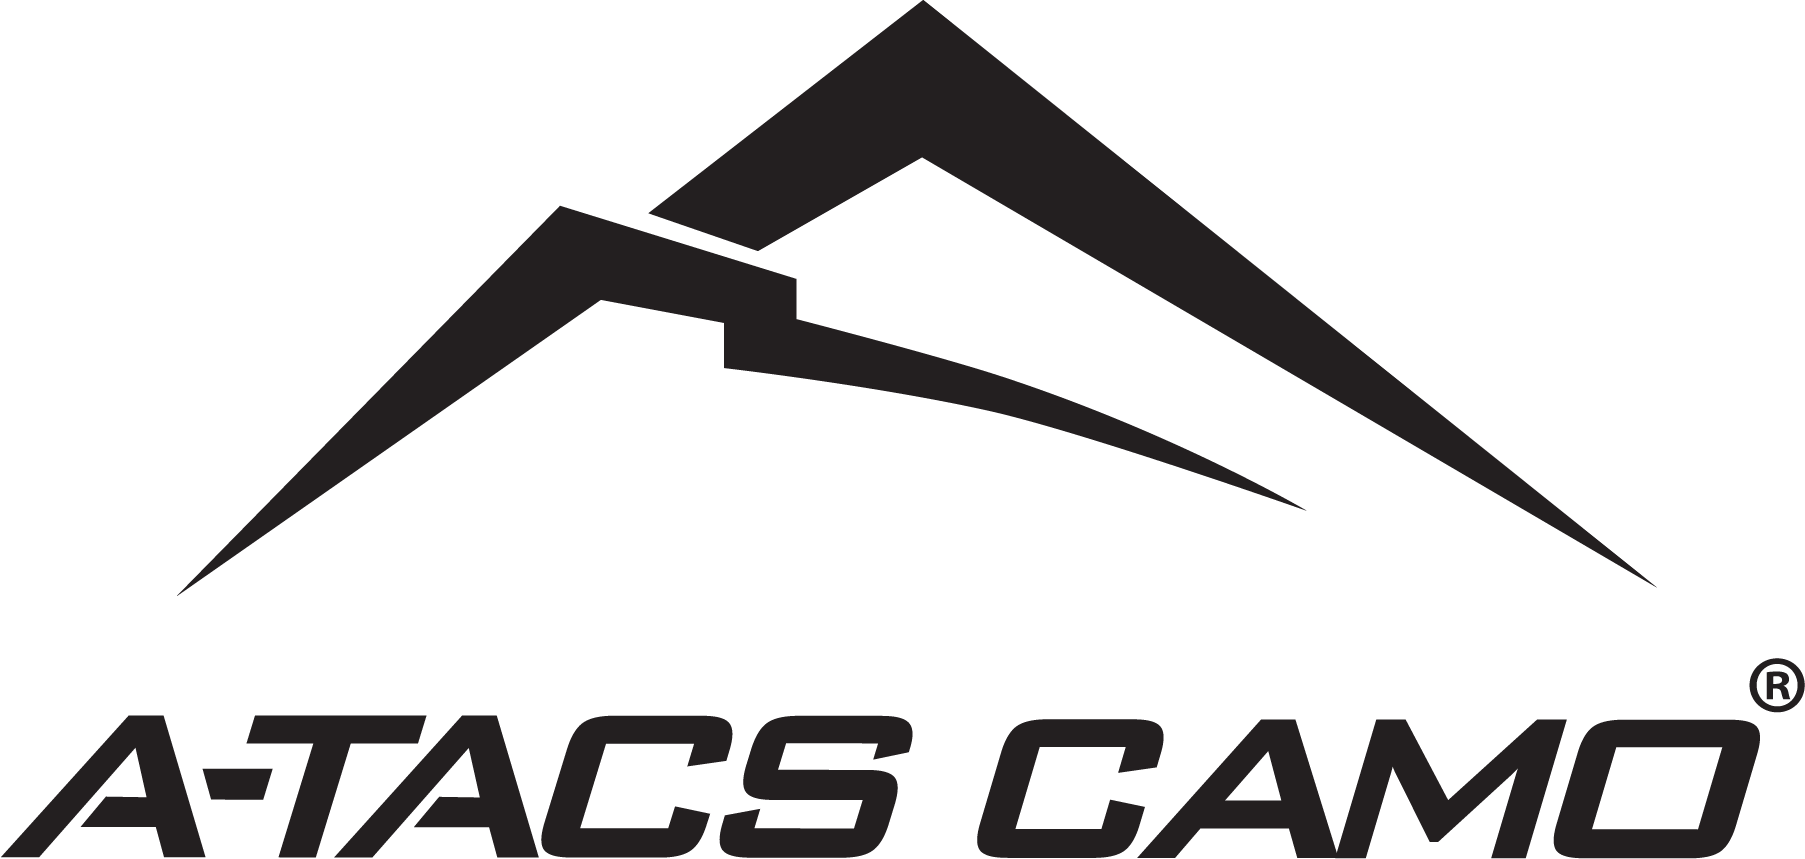 A-TACS camo vinyl wrap